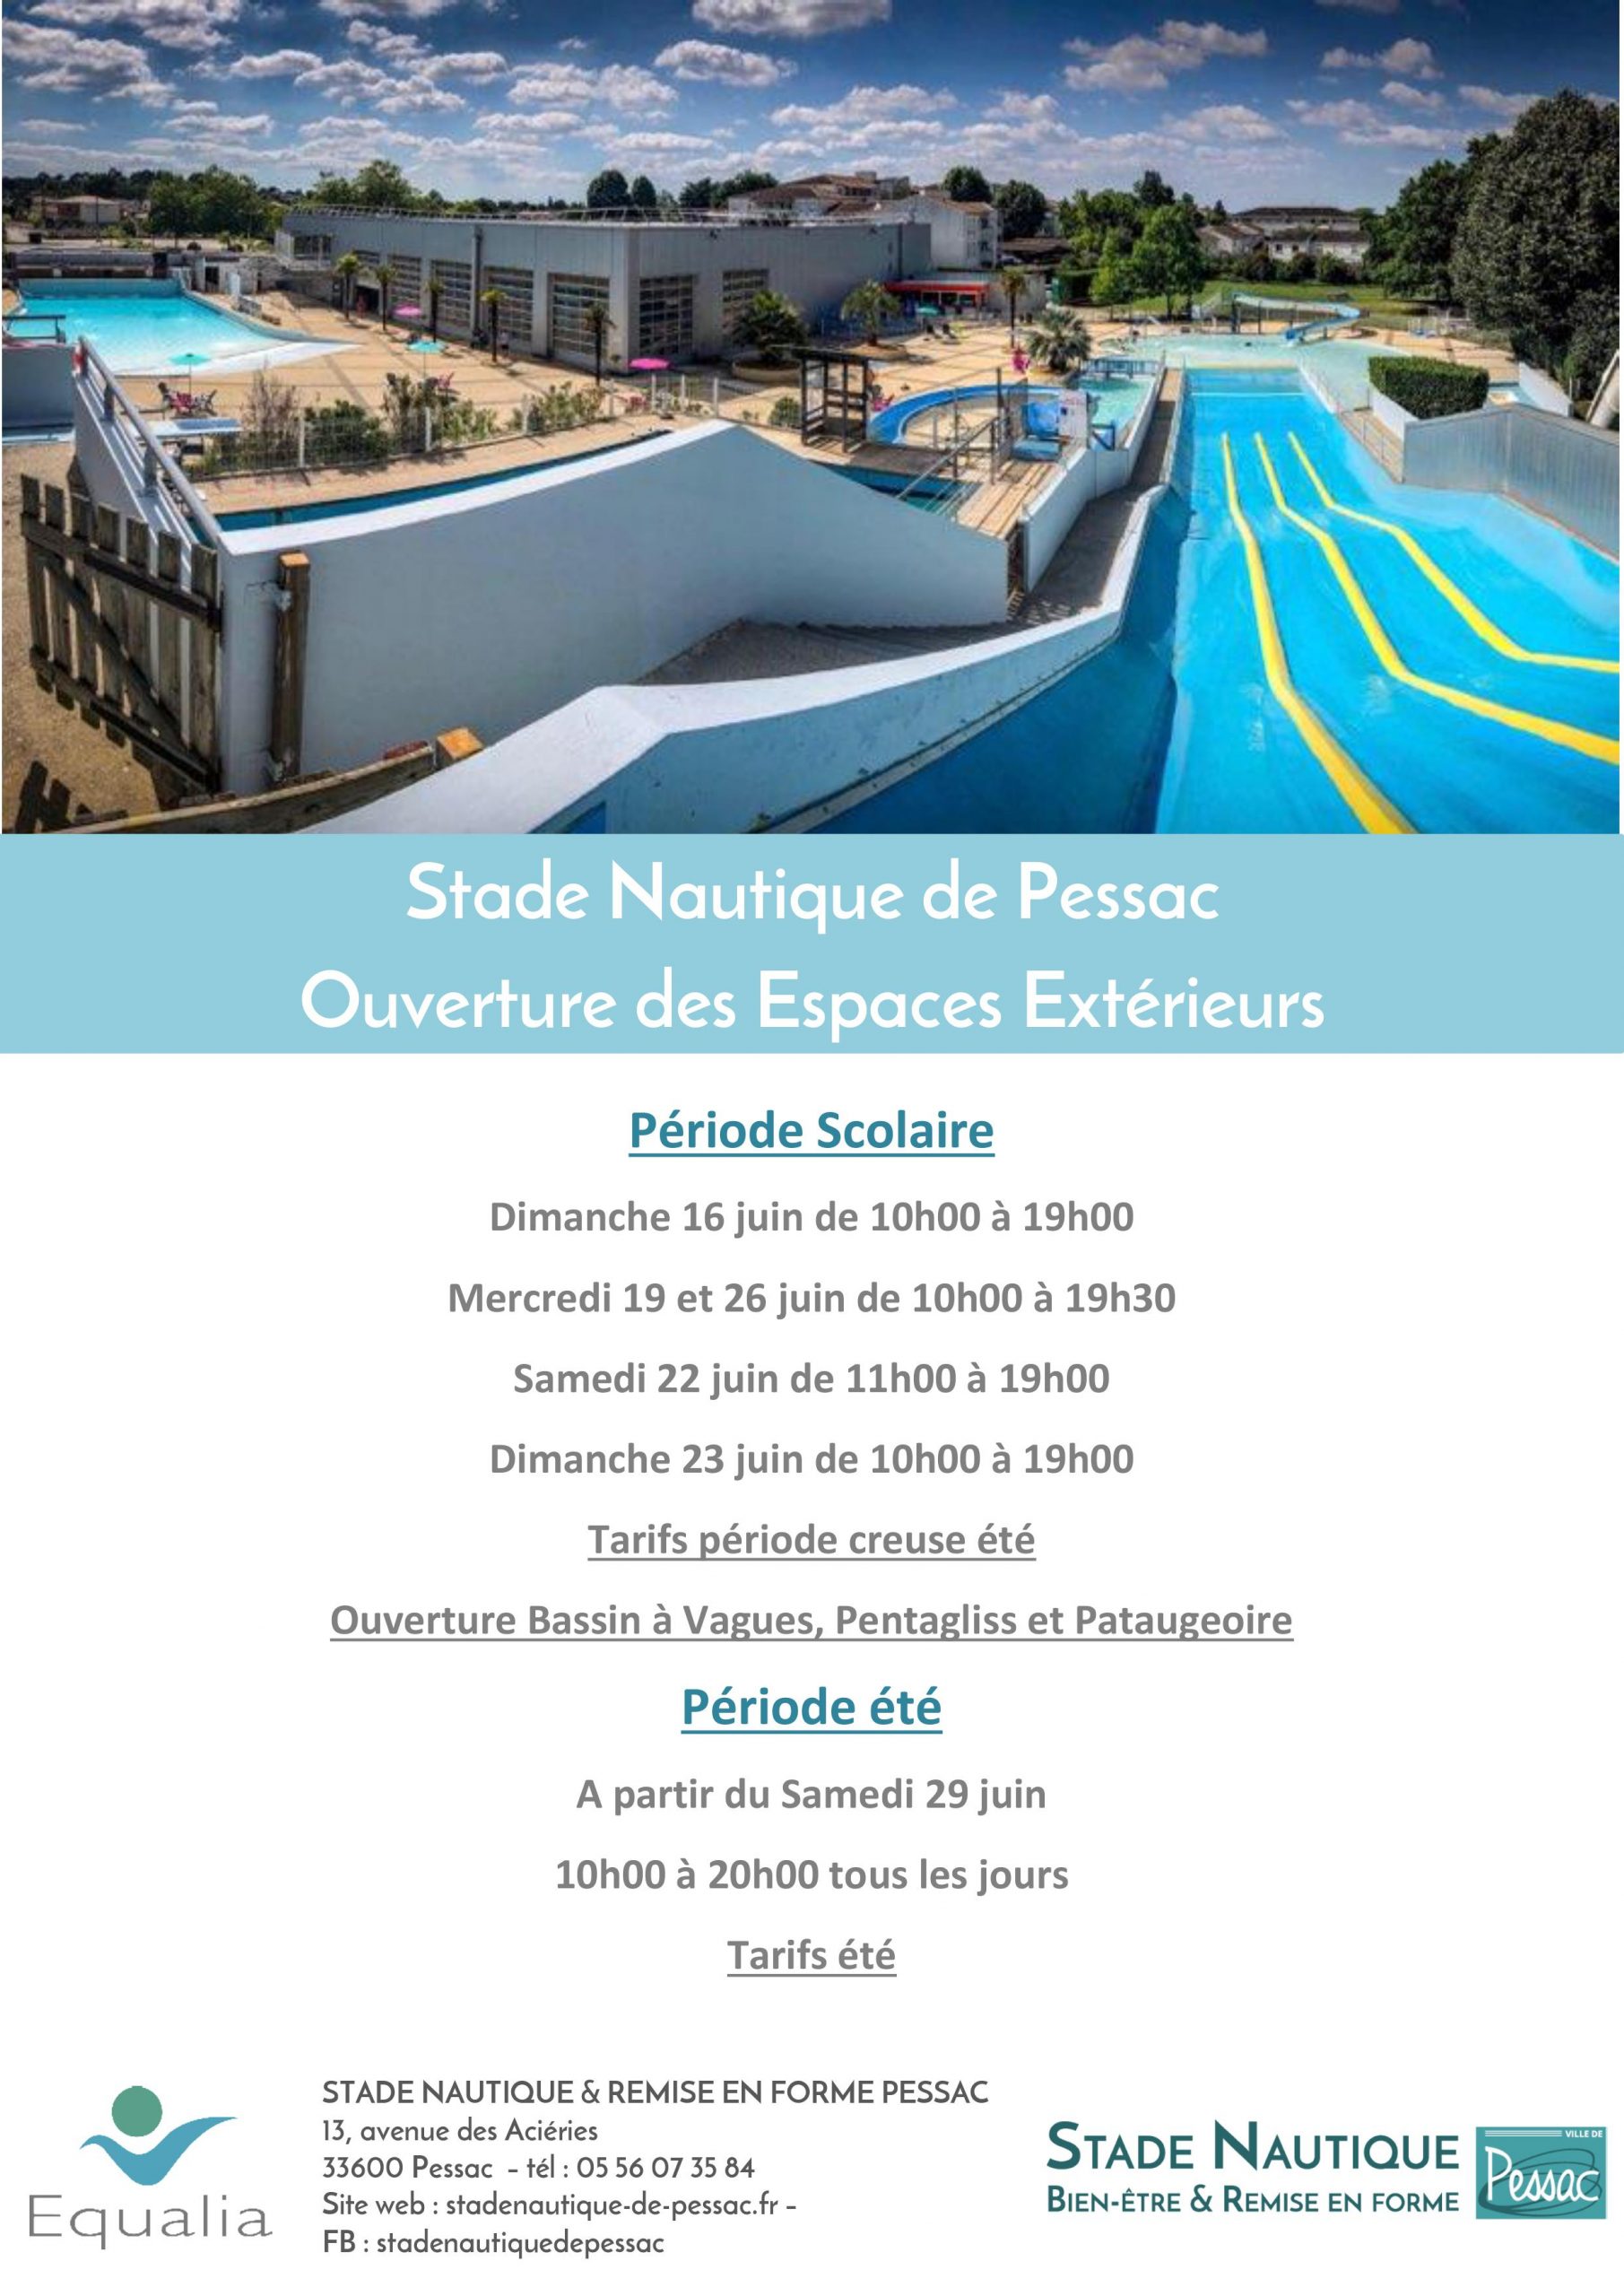 Ouverture Bassins Extérieurs 2019 - Stade Nautique De Pessac intérieur Piscine Pessac Horaires